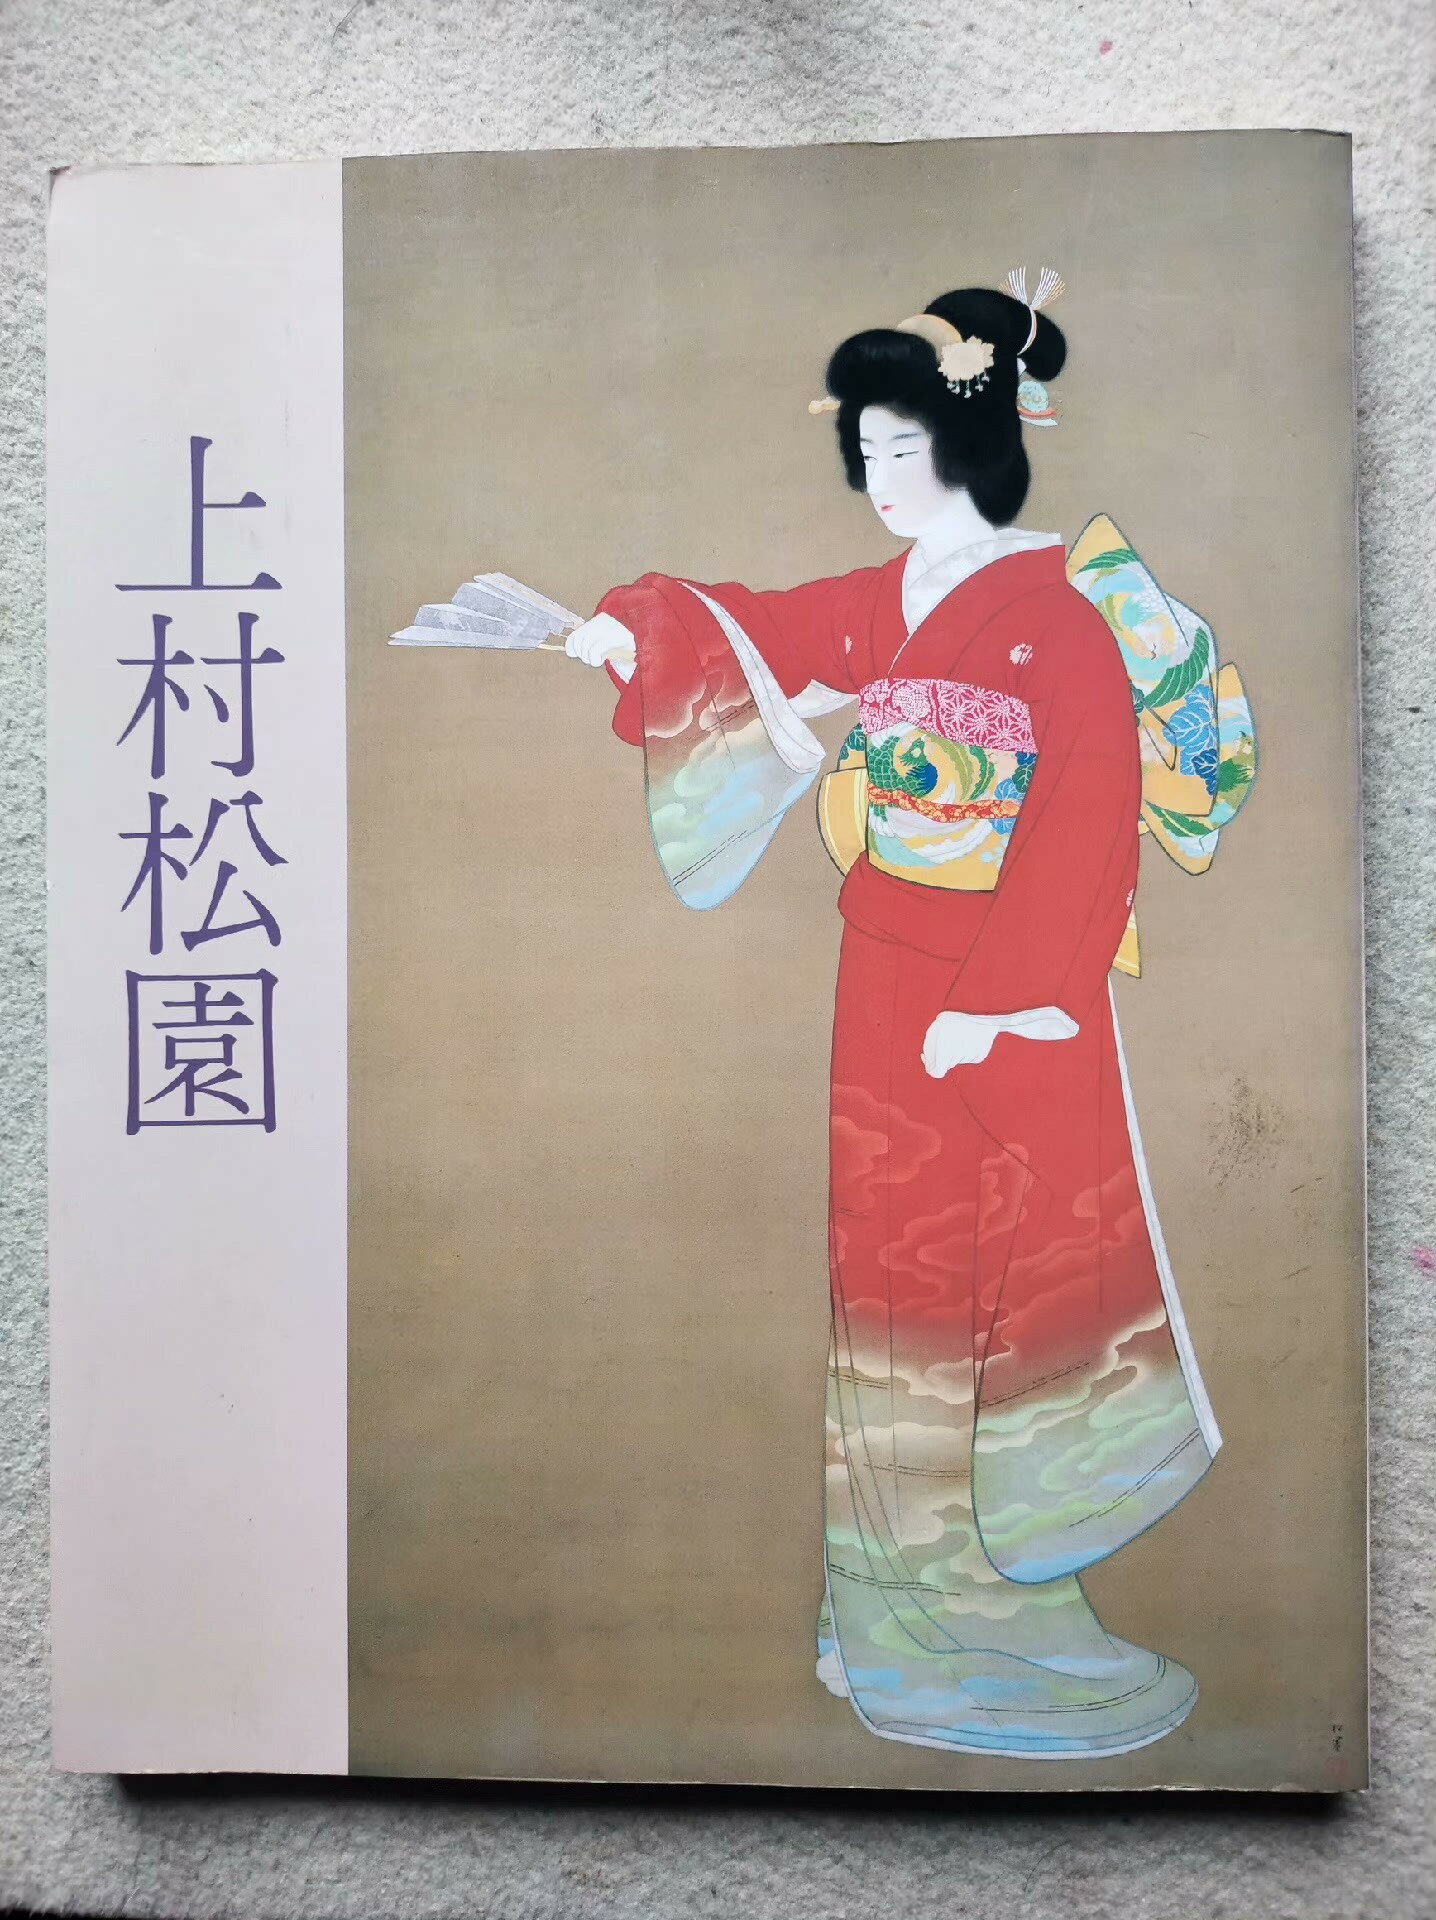 《上村松園名作展》，1983年。日本美人圖的巨匠上村松園作品